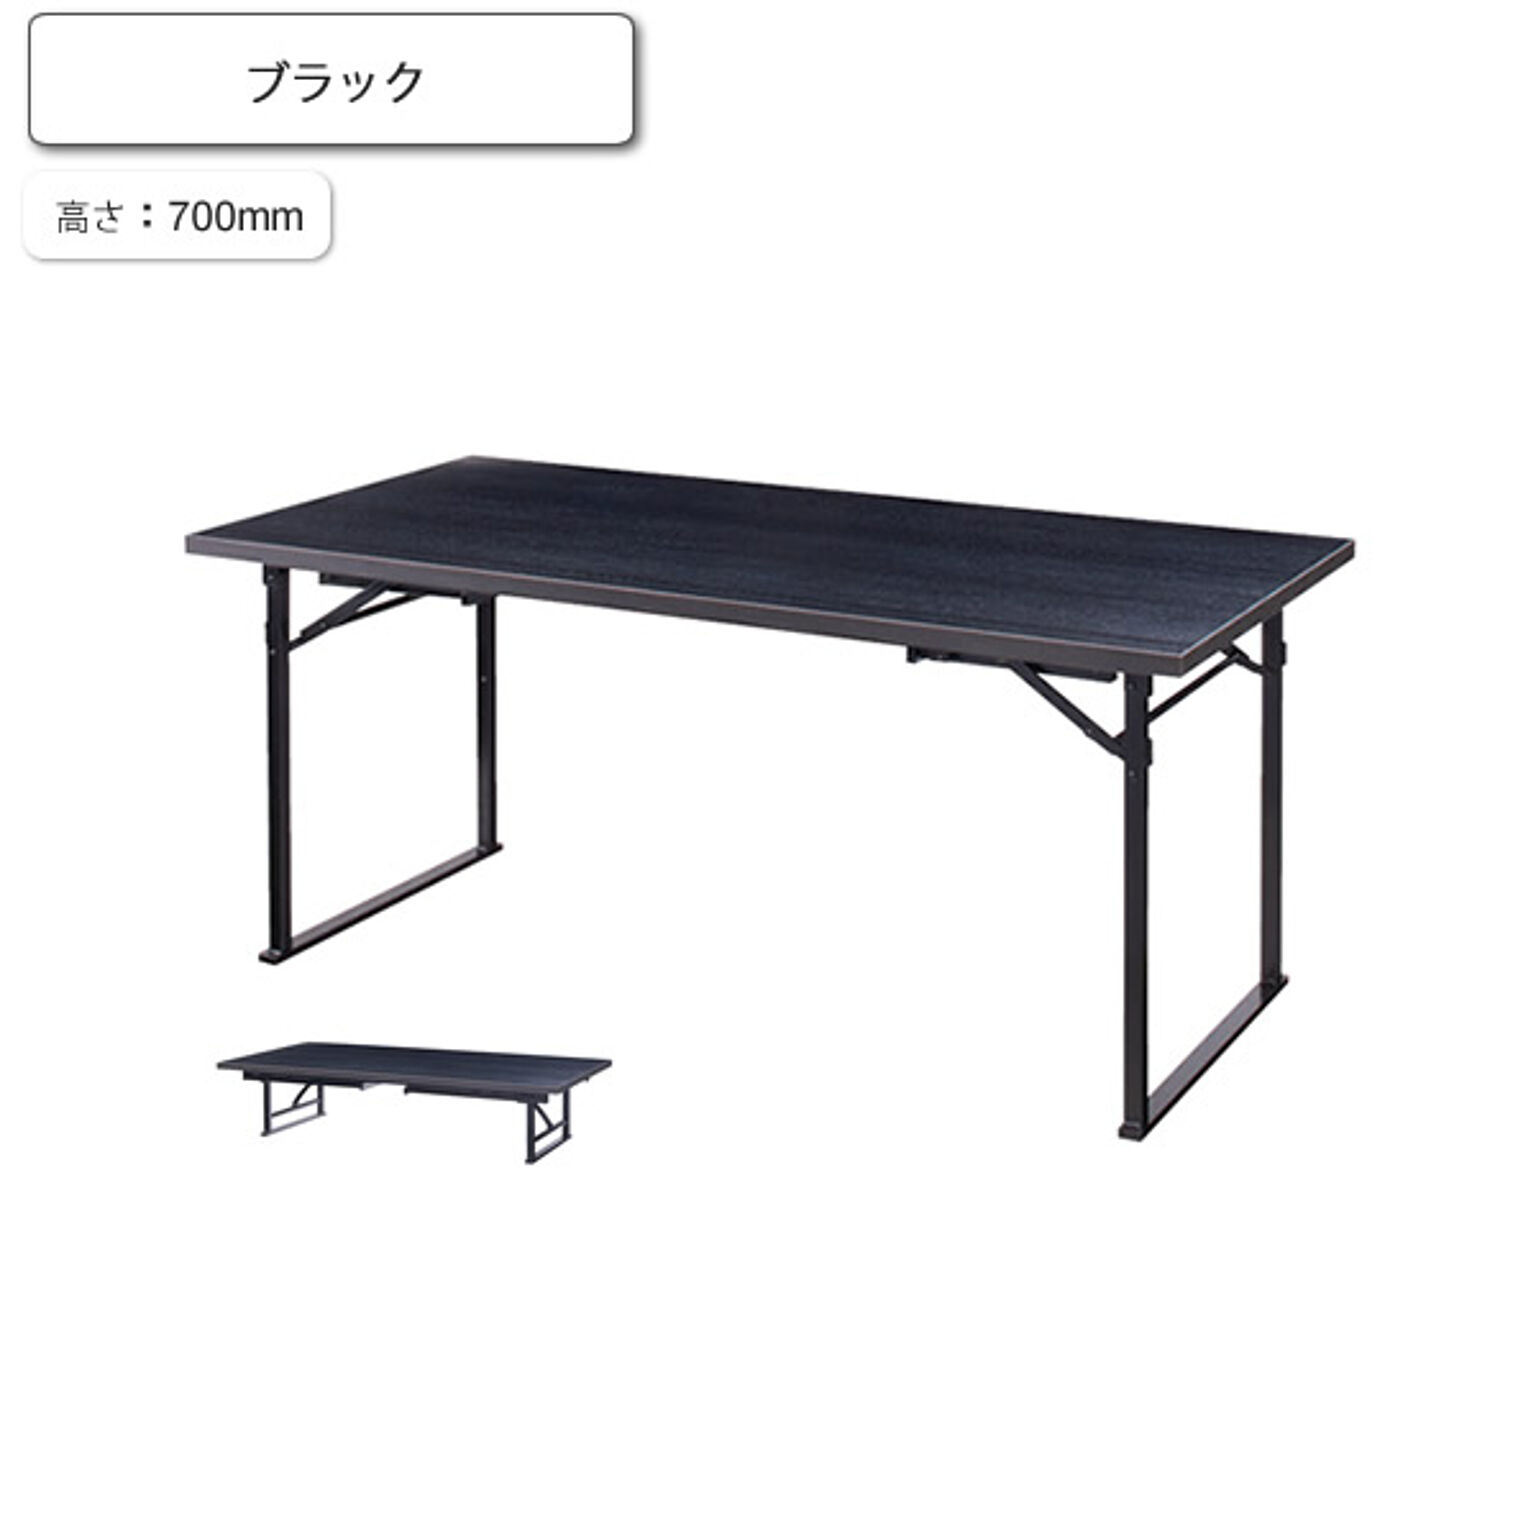 ダイニングテーブル 座卓 コンバーチブル H700 千歳 ブラック 業務用家具シリーズ JAPANESE（ジャパニーズ）  店舗 施設 コントラクト